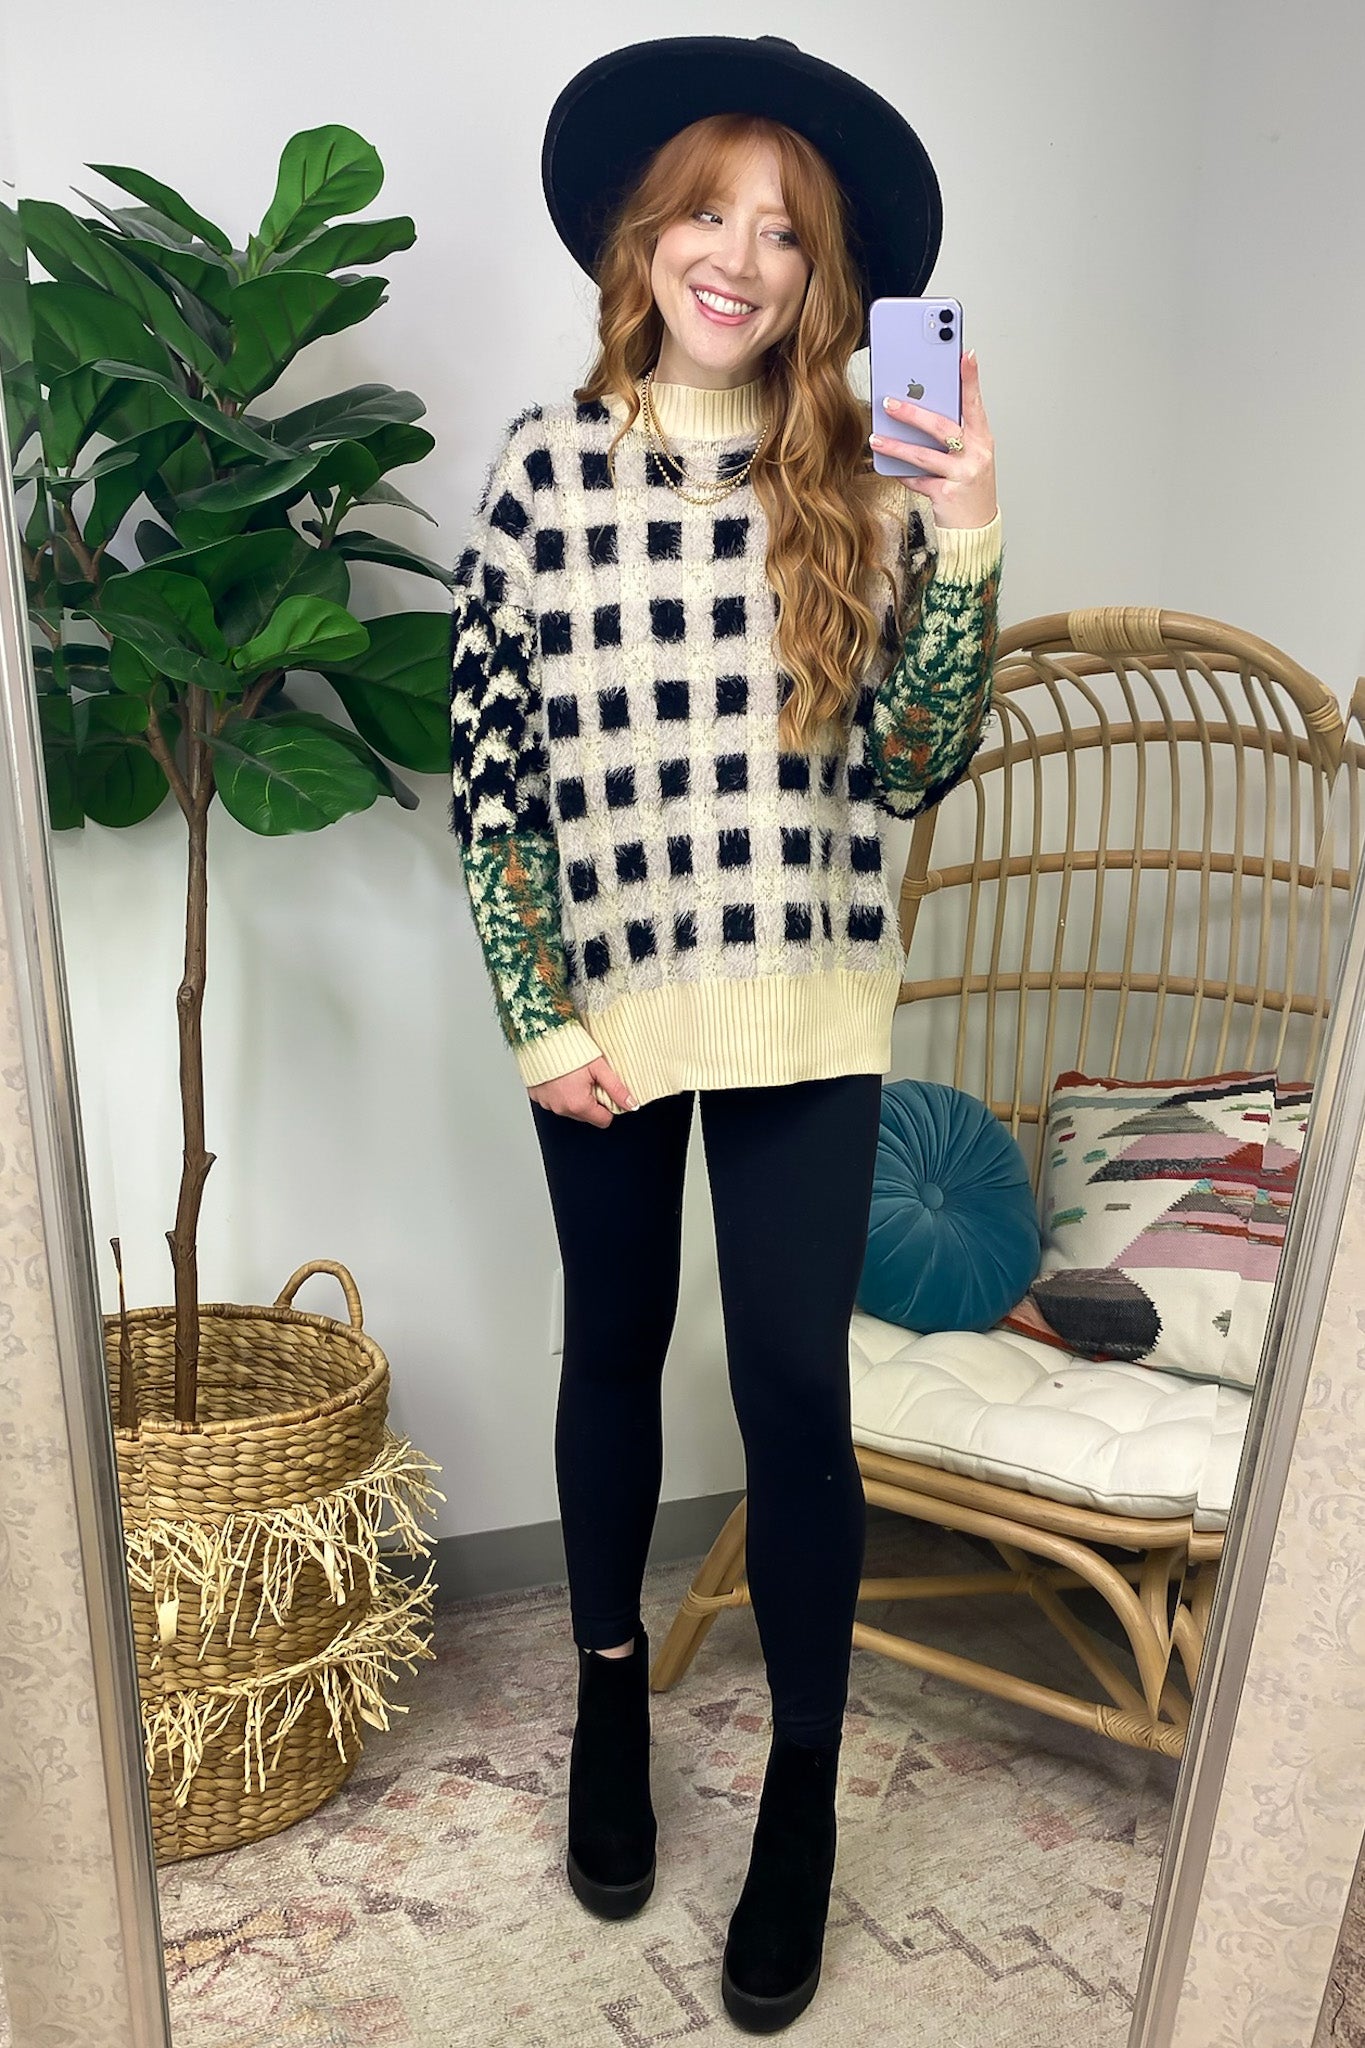  Plush Personality Fuzzy Knit Plaid Sweater - FINAL SALE - Madison and Mallory